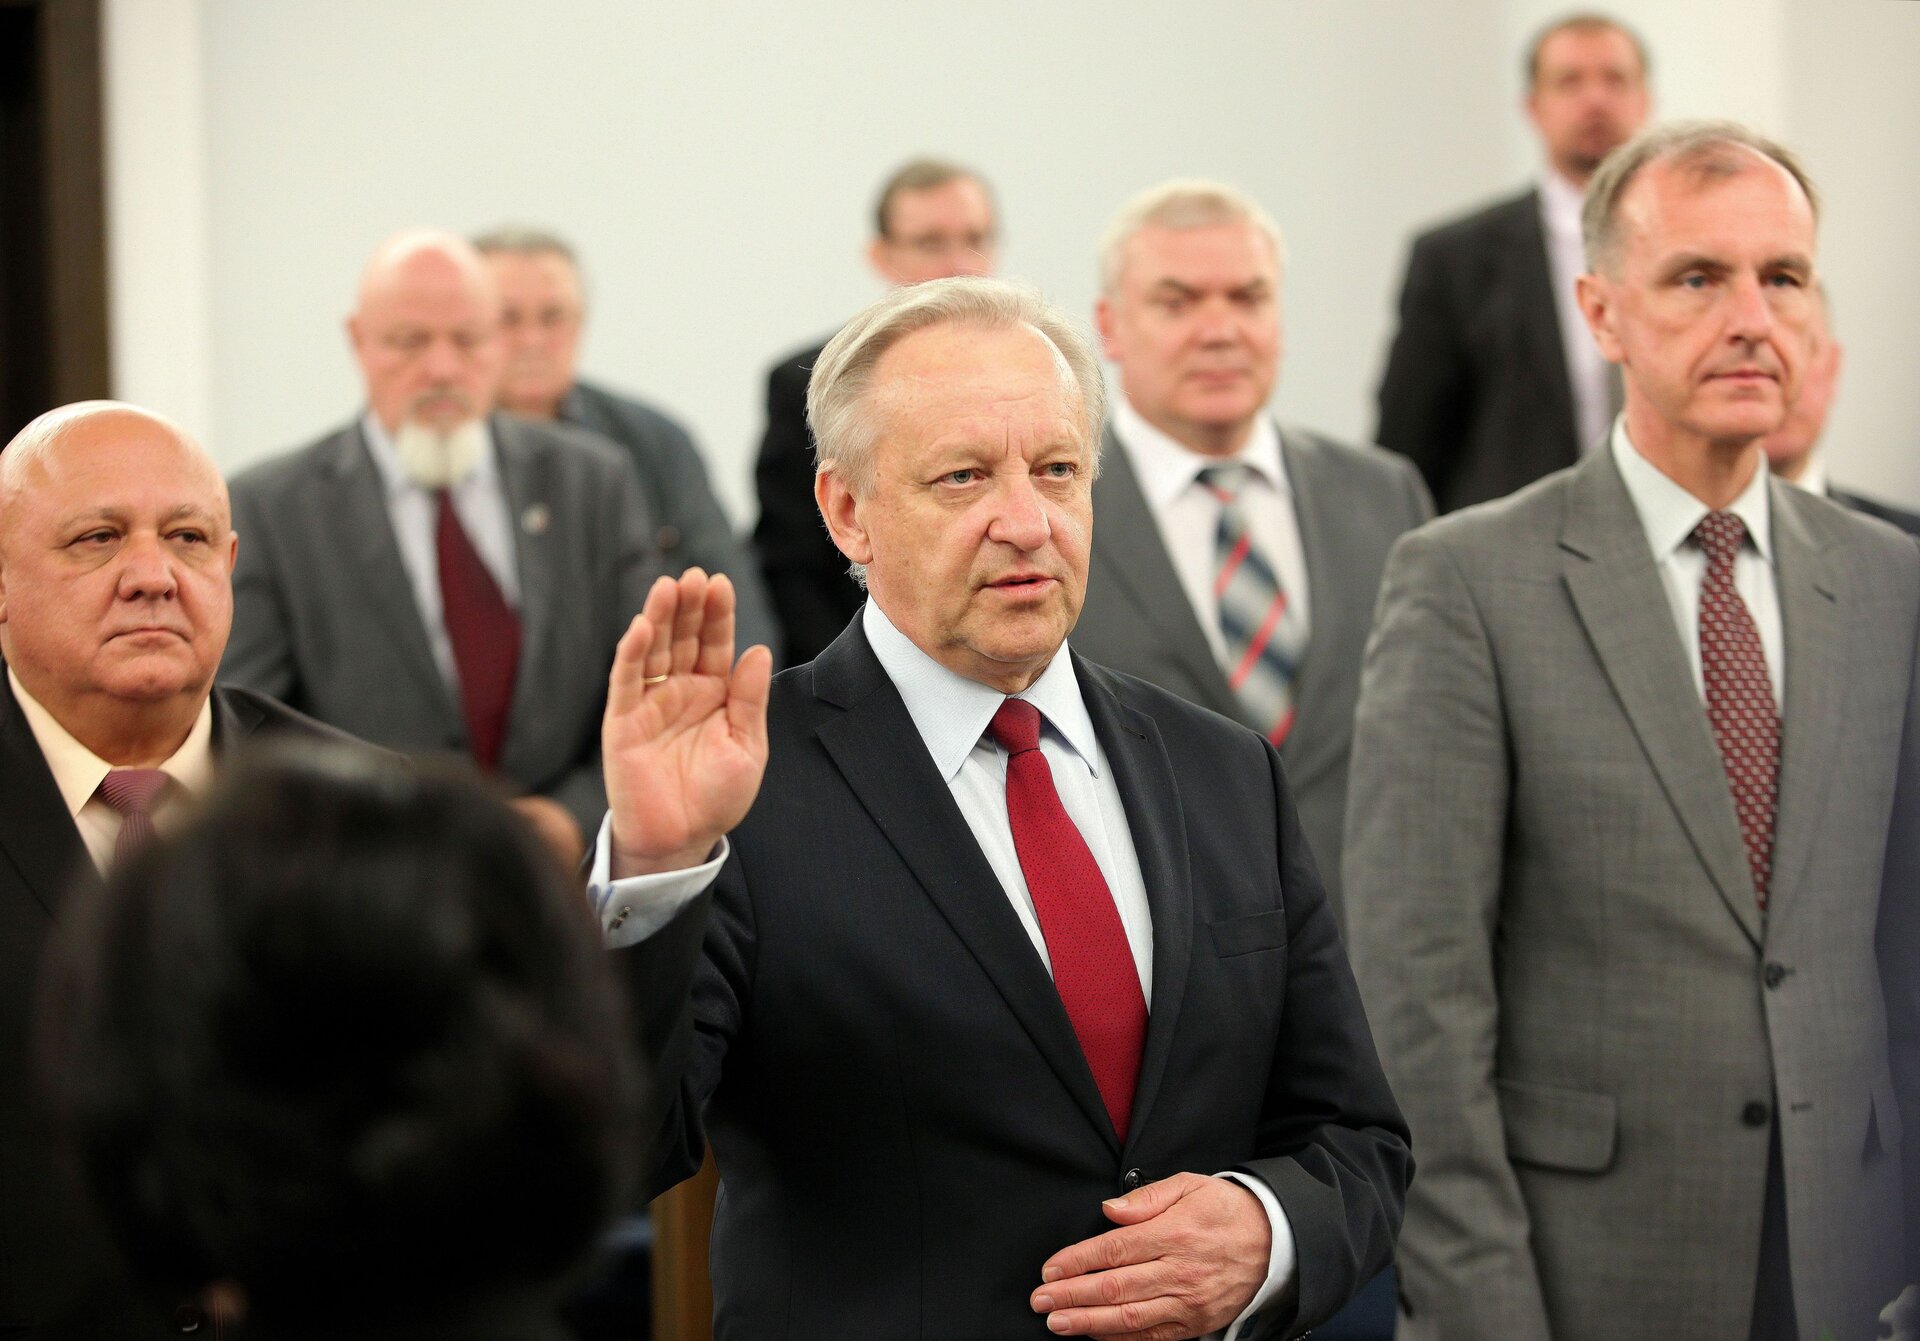 Zdjęcie wykonane w sali senackiej polskiego parlamentu podczas uroczystości. Na pierwszym planie mężczyzna podnosi prawą dłoń otwartą ku górze, zwrócony jest wzrokiem i sylwetką w stronę prawej krawędzi fotografii pod kątem. Po obu jego stronach dwaj mężczyźni w postawie stojącej, za plecami pierwszego rzędu widoczne sylwetki pięciu pozostałych uczestników zgromadzenia. Na pierwszym planie, bliżej lewej dolnej krawędzi widoczny tył głowy postaci, najpewniej pracownika parlamentu. Wszystkie osoby ukazane na fotografii ubrane w stroje galowe - garnitury z krawatami.